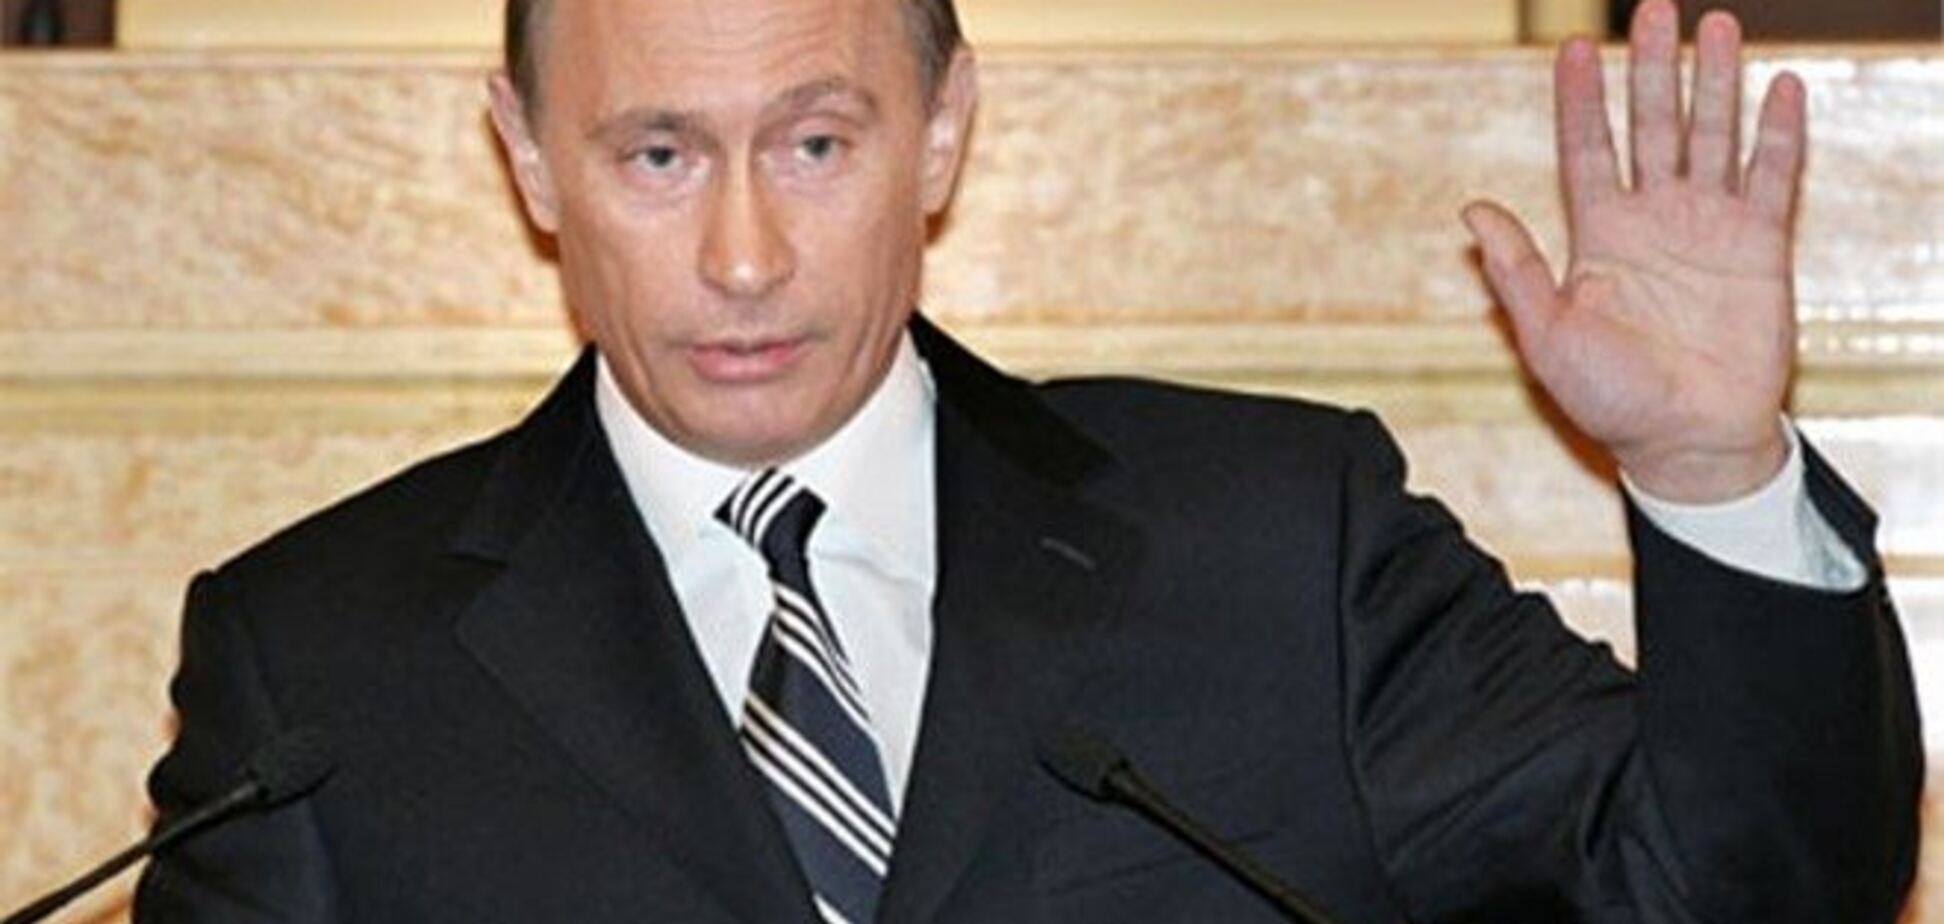 Прес-секретар: Путін поки не збирається у відпустку